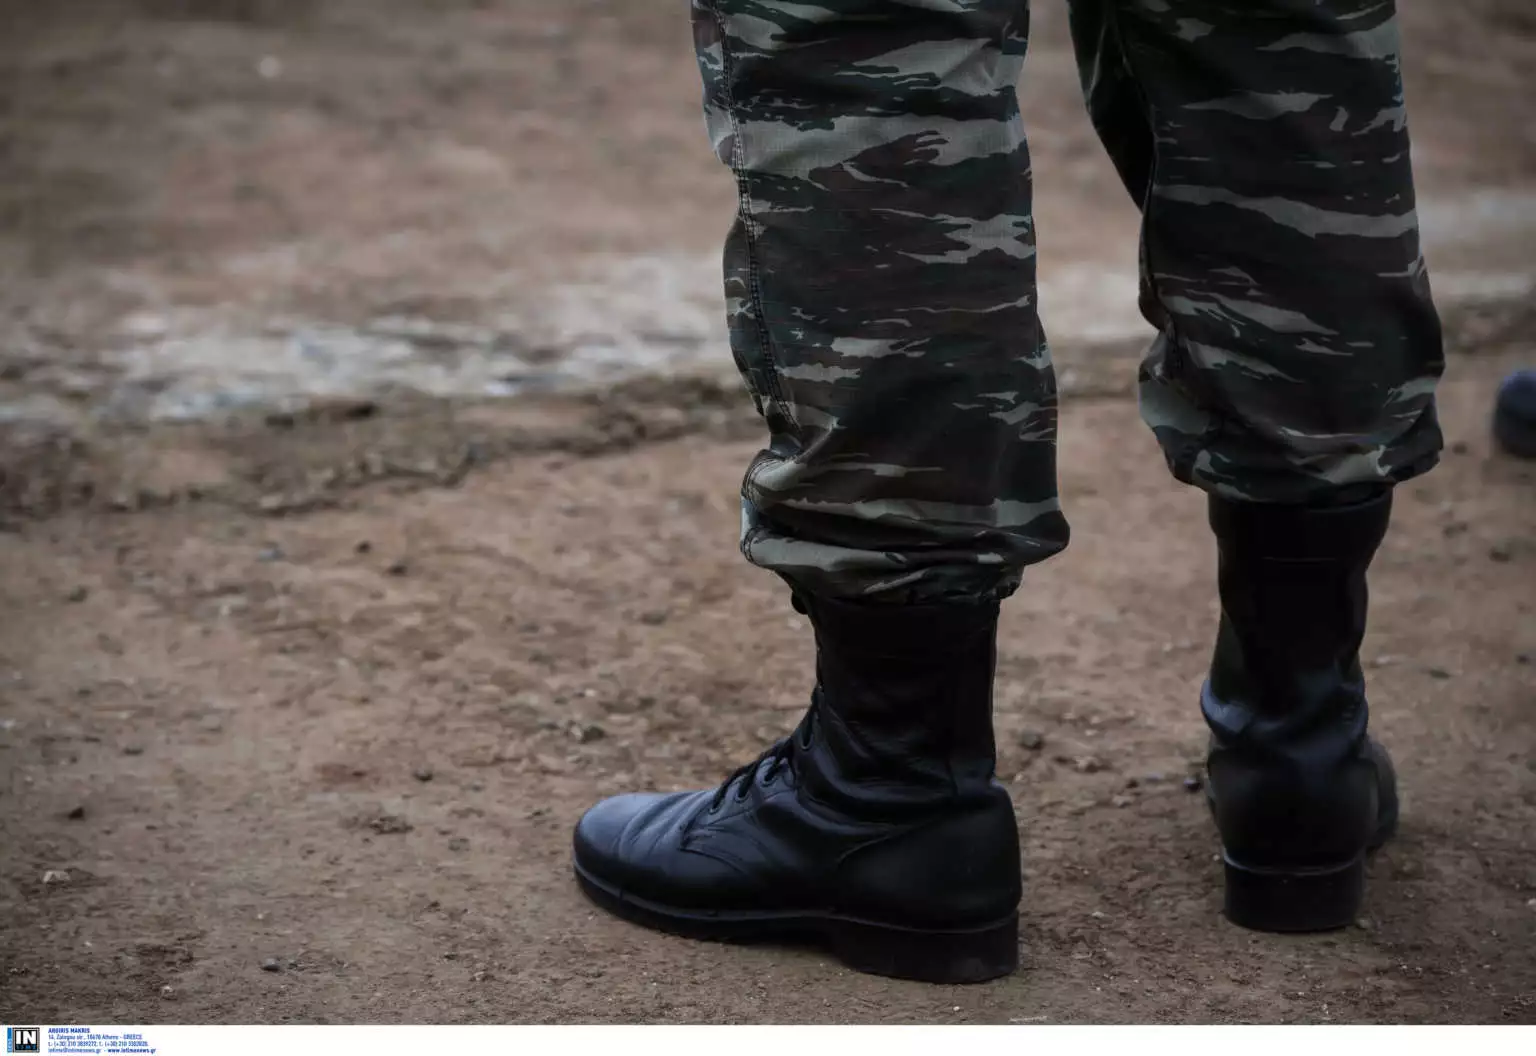 Σε πένθος οι Ένοπλες Δυνάμεις: Σκοτώθηκε αρχιλοχίας σε στρατόπεδο στην Ημαθία